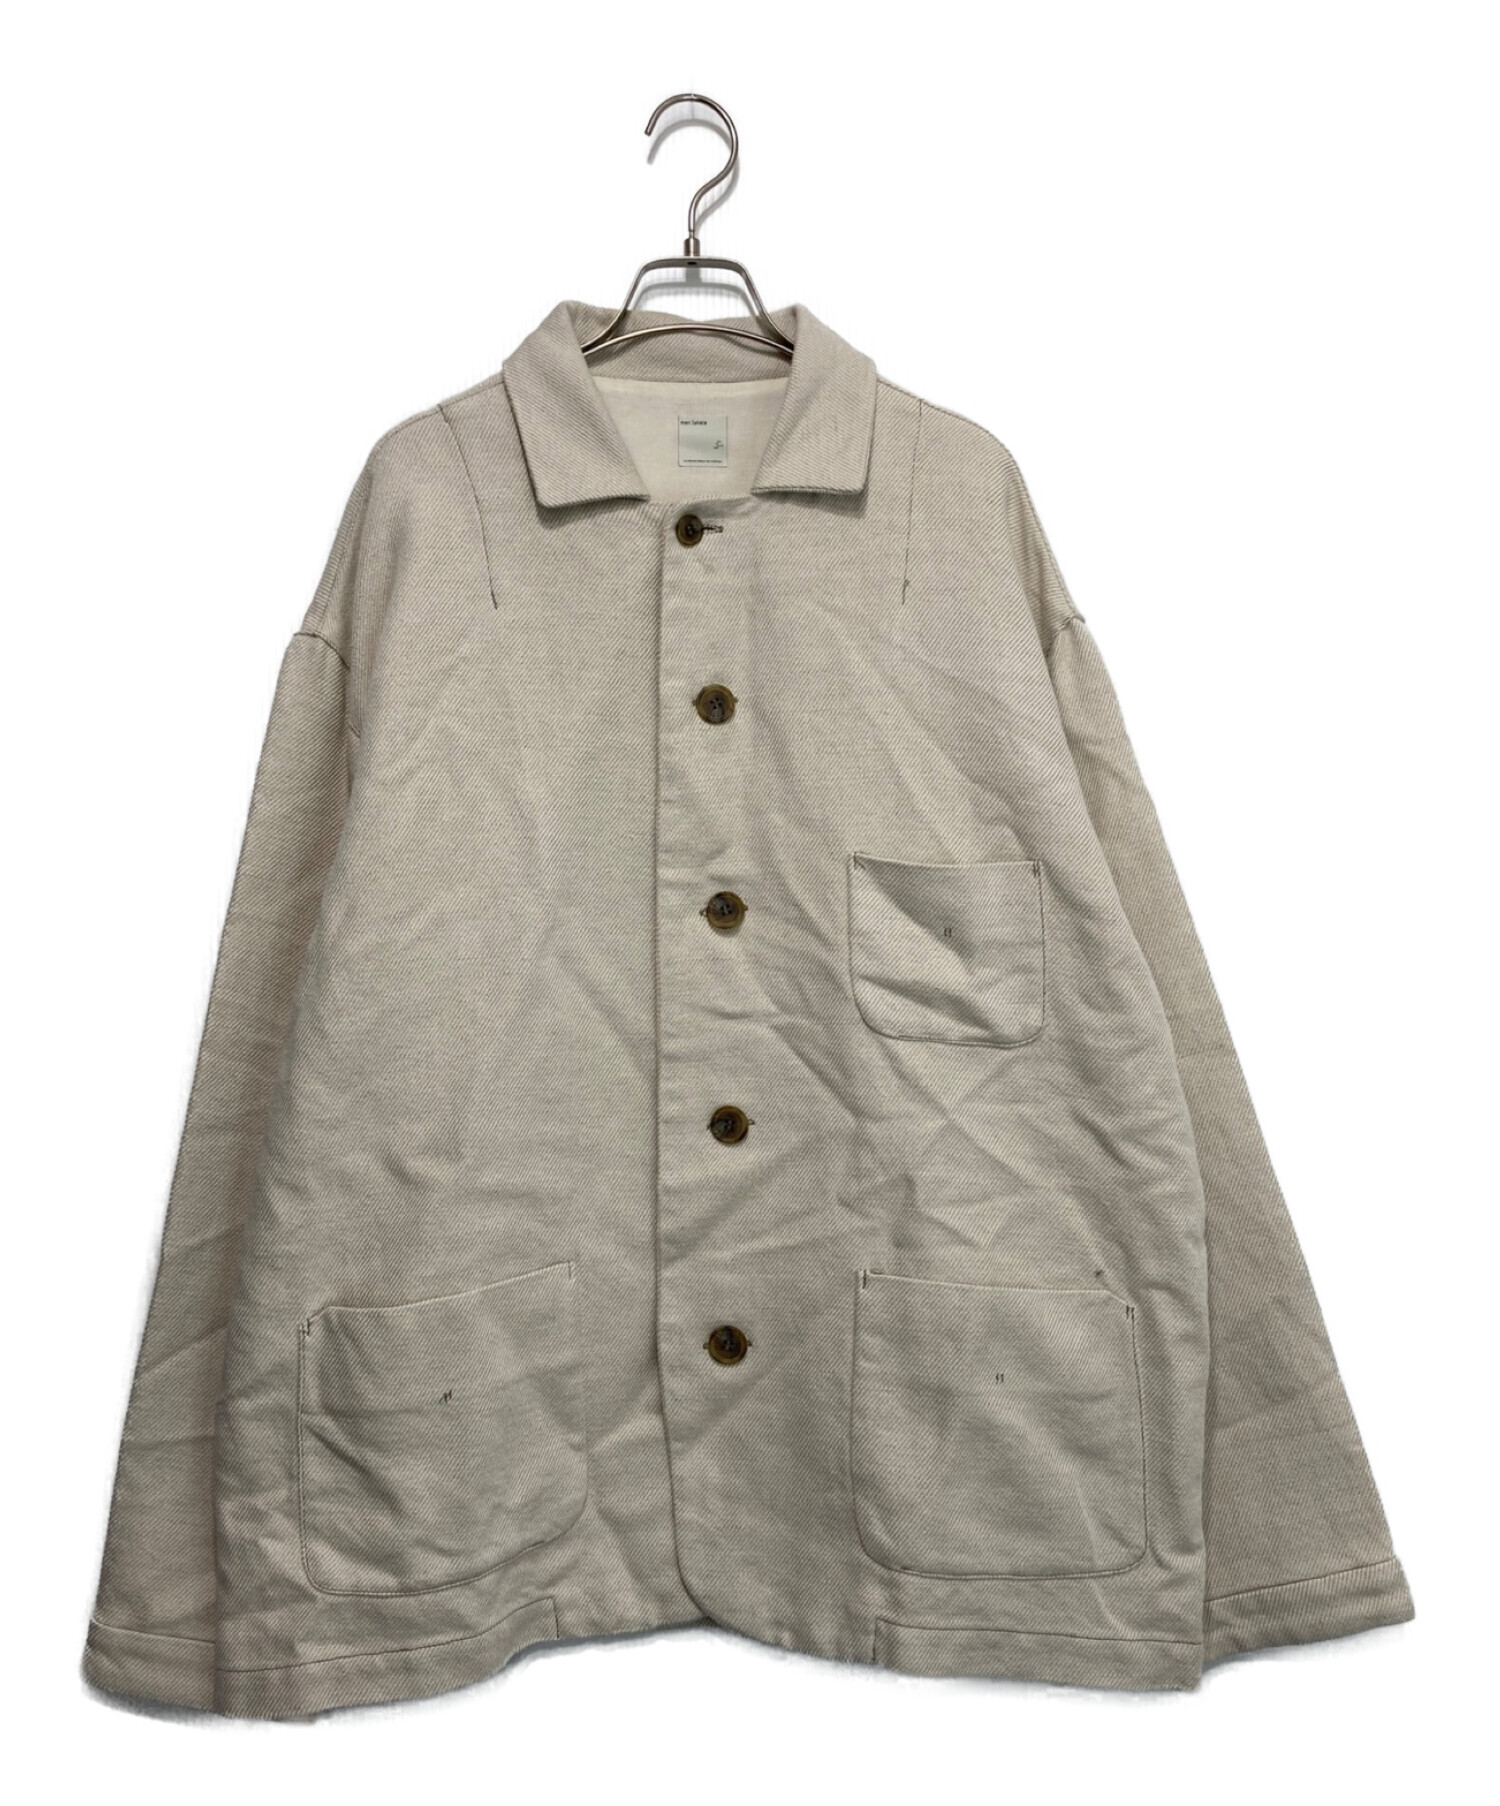 mon sakata (モンサカタ) ワークジャケット アイボリー サイズ:ケアタグ欠損の為不明